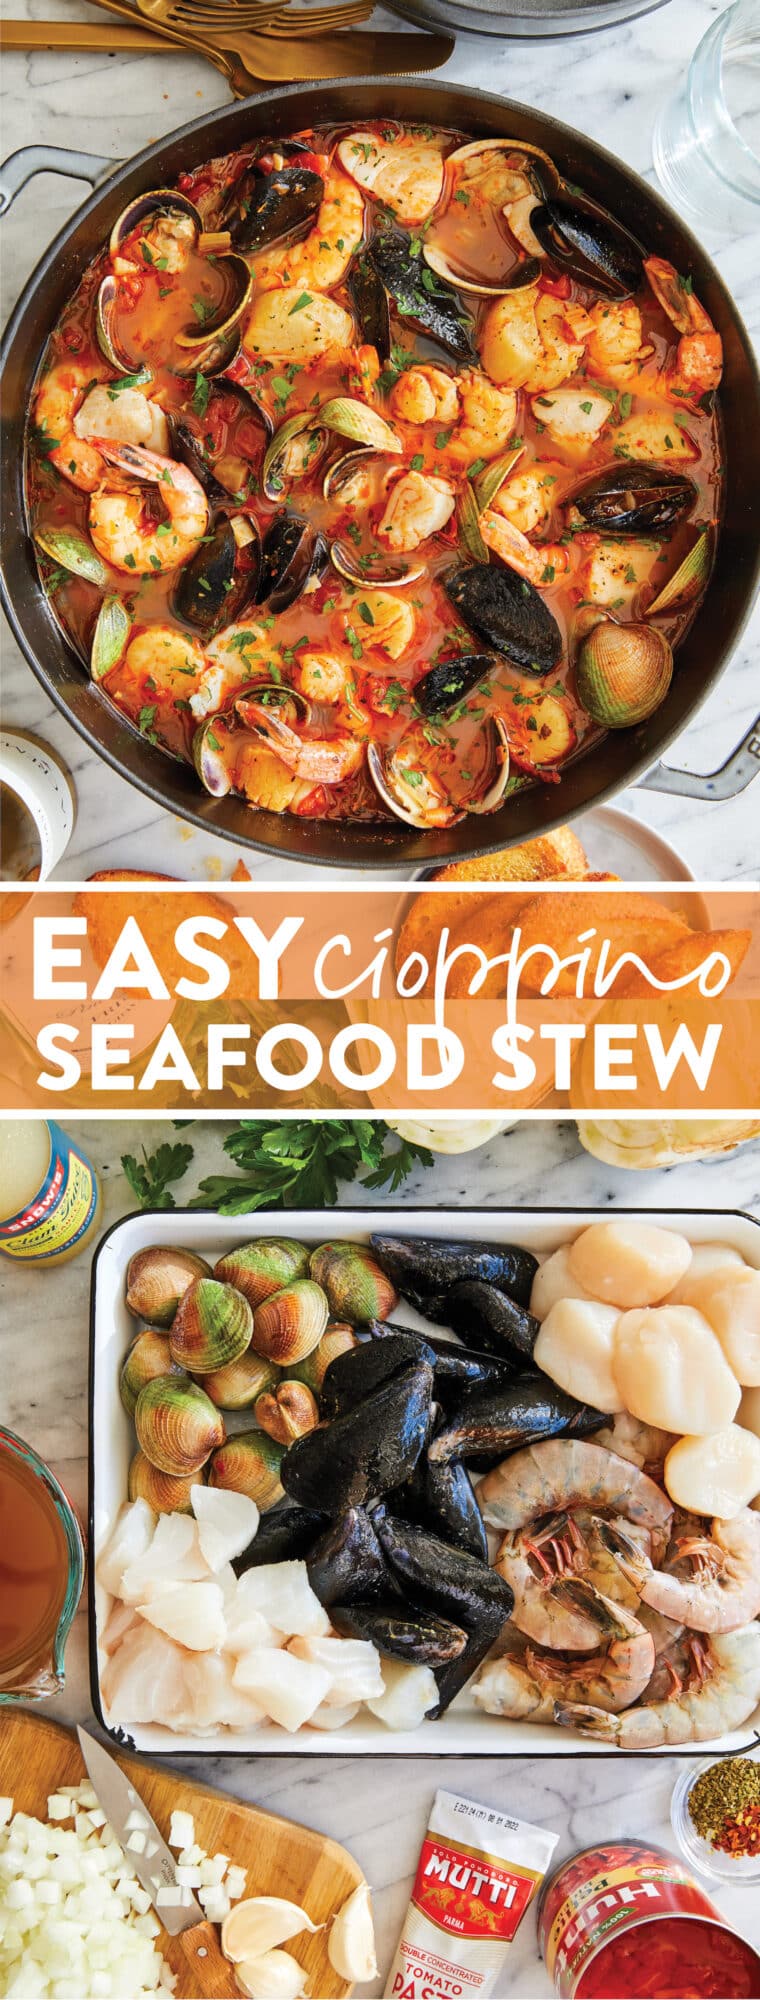 Easy Cioppino (тушеное мясо с морепродуктами) - ЛУЧШЕЕ рагу из морепродуктов, наполненное моллюсками, мидиями, треской, креветками и морскими гребешками. Так уютно, так душевно, так легко.